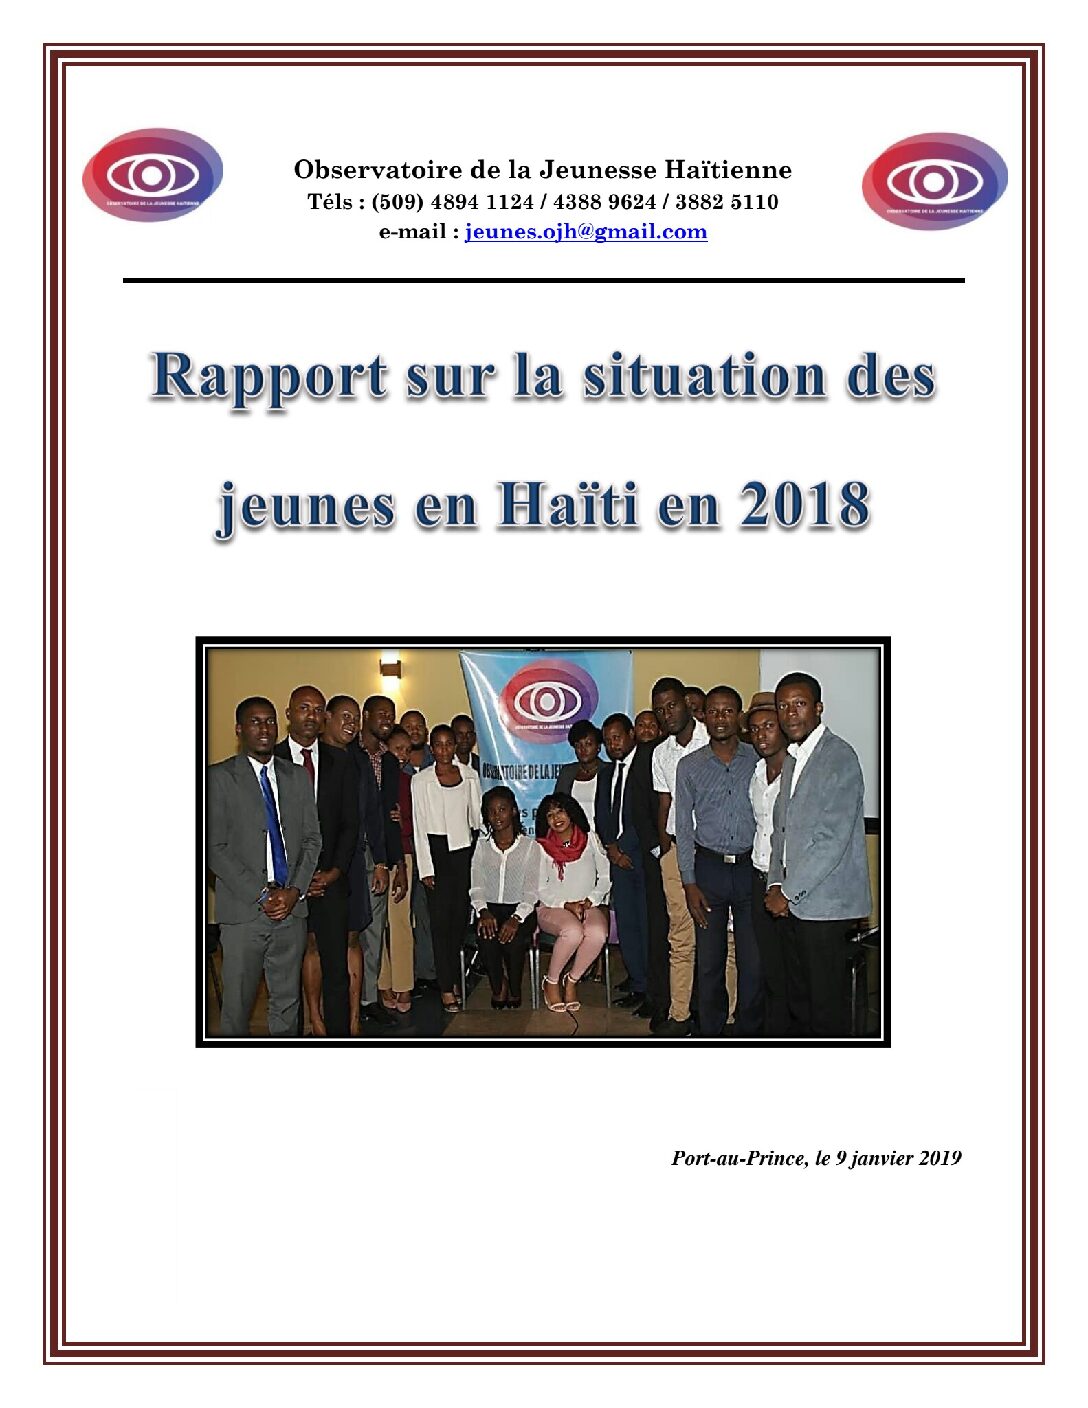 OJH - Rapport annuel sur la Situation de la jeunesse en Haiti en 2018 de l Observatoire de la Jeunesse